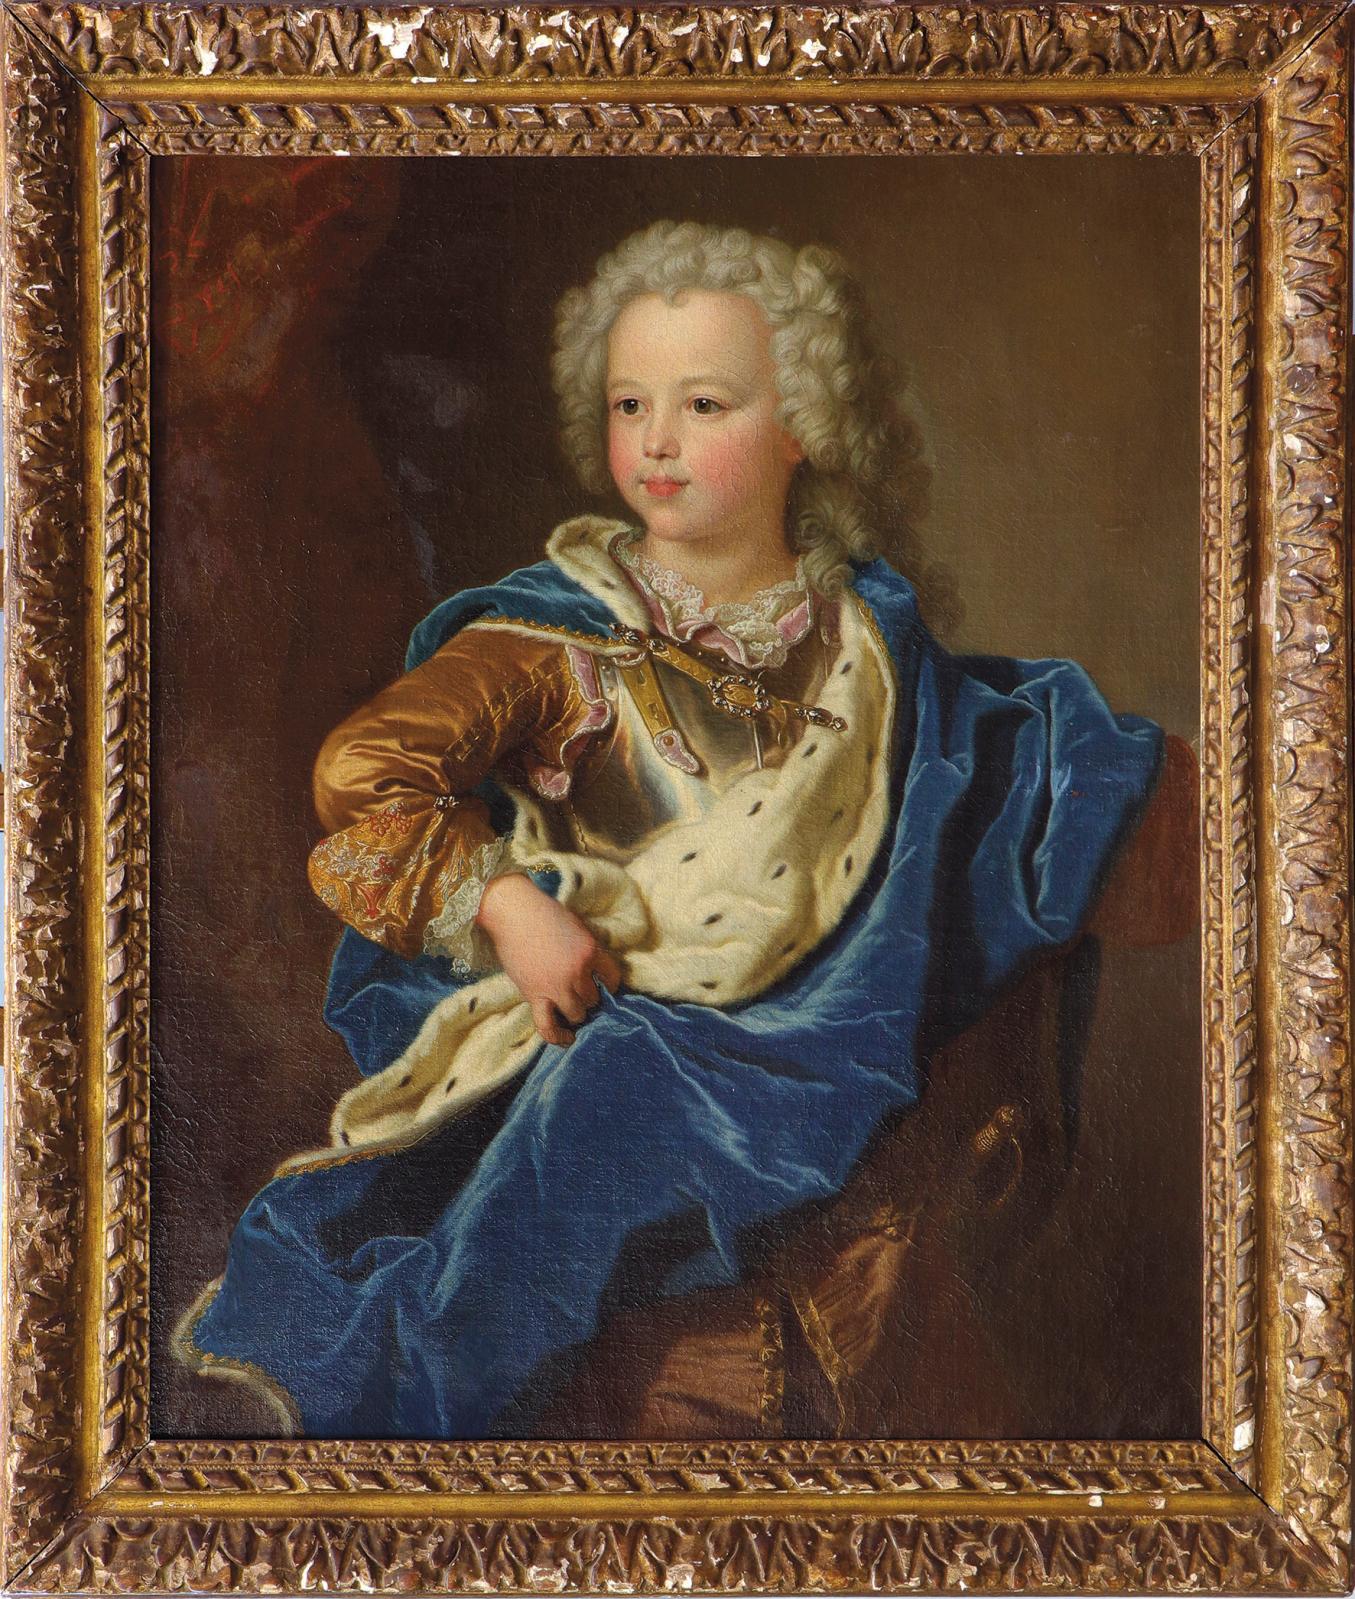 Le duc de Luynes à 5 ans par l'atelier de Rigaud